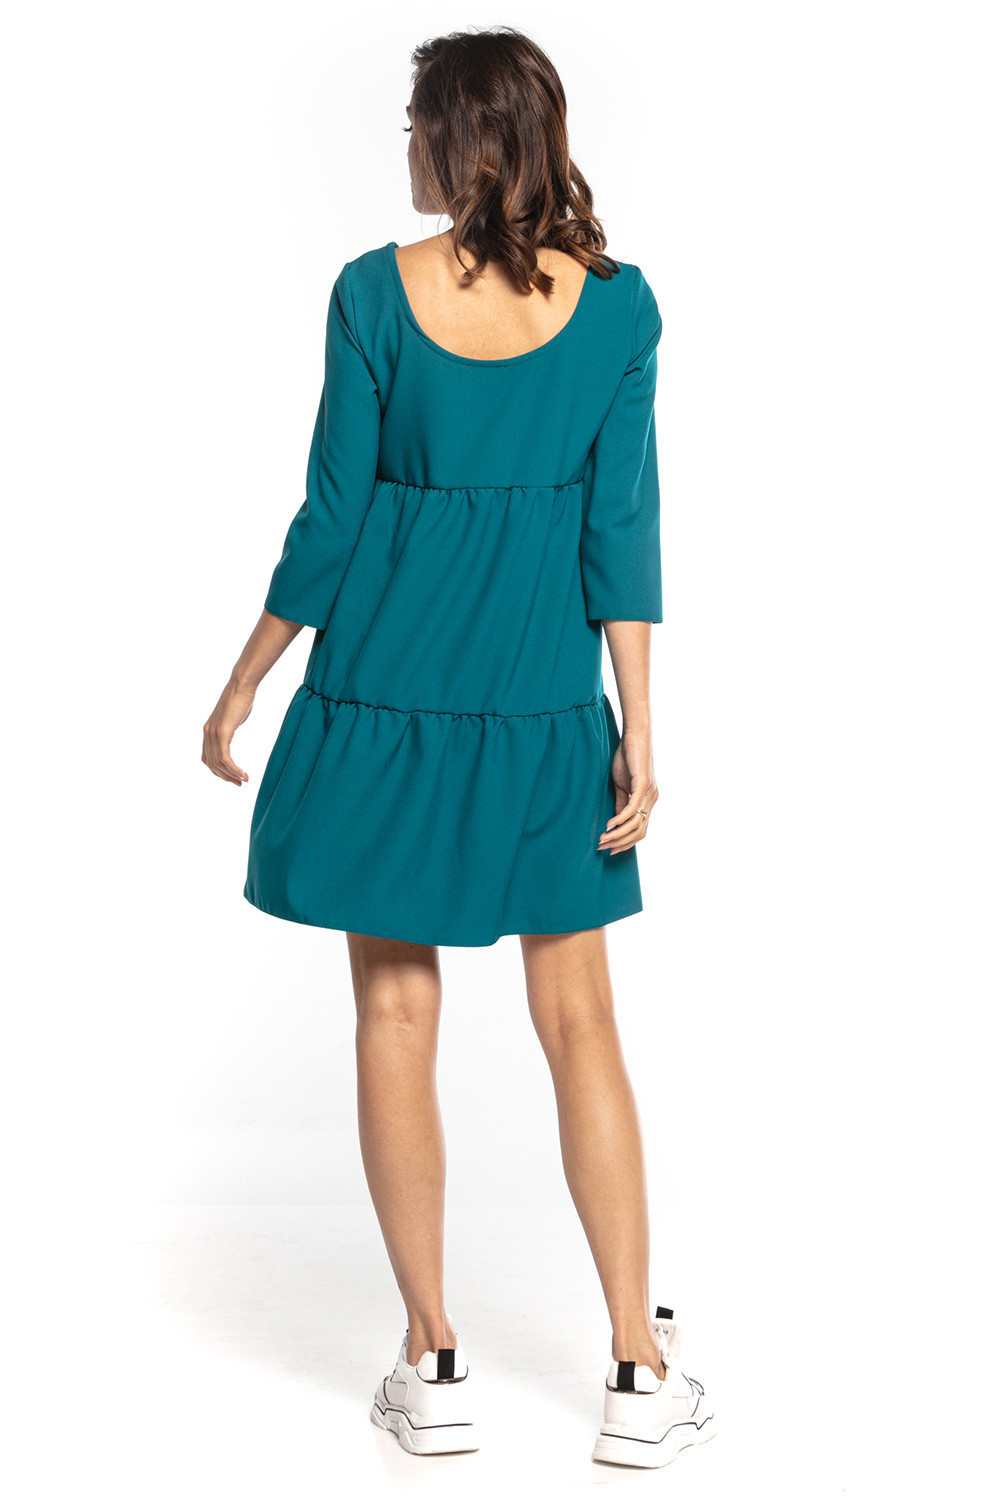 Dámské šaty T353 - Tessita Velikost: XL-42, Barvy: smaragdová